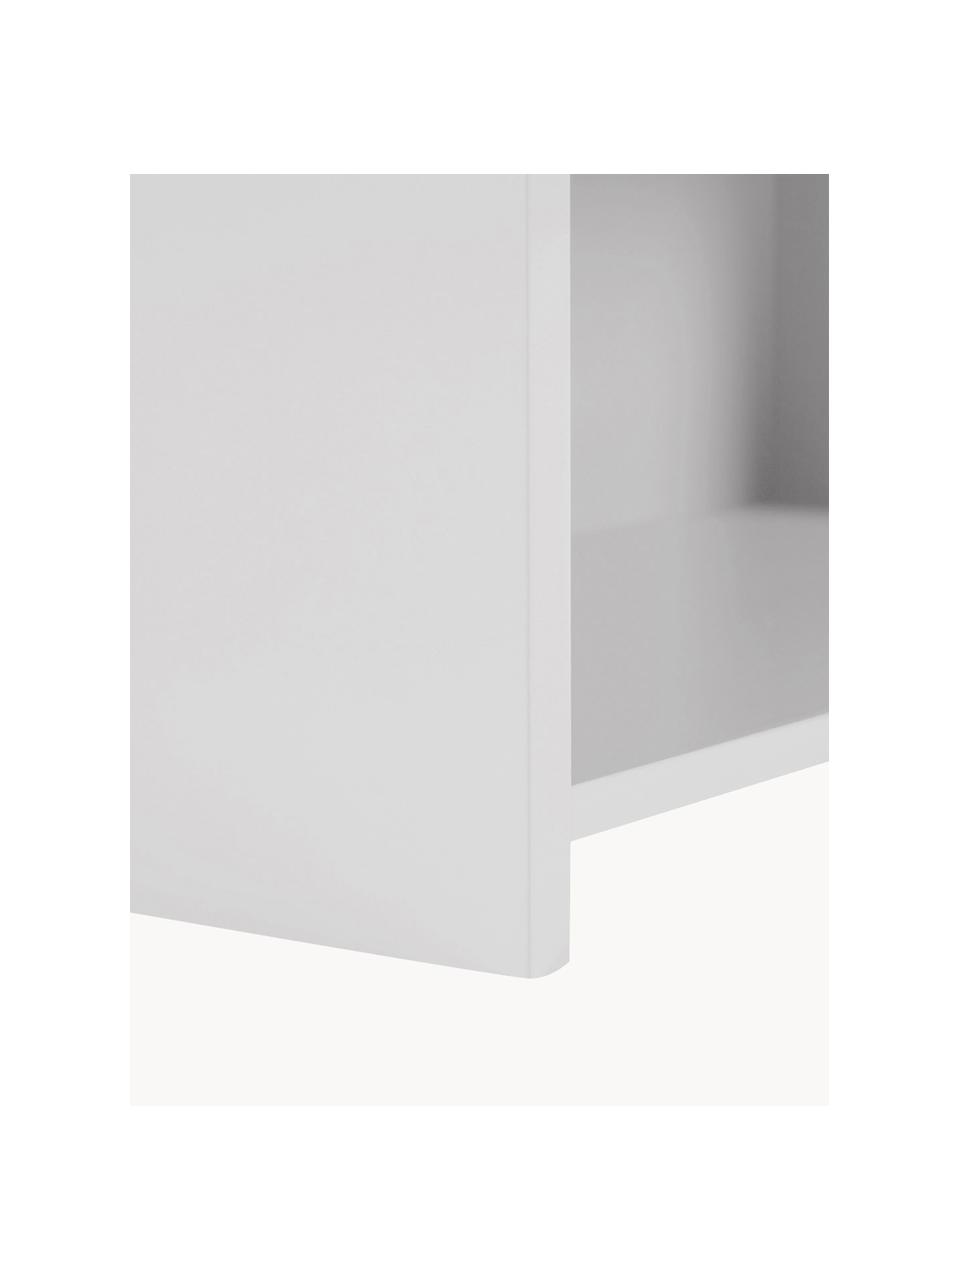 Kinderwandkast Celeste, Vezelplaat met gemiddelde dichtheid (MDF), gelakt, Hout, wit gelakt, B 50 x H 105 cm